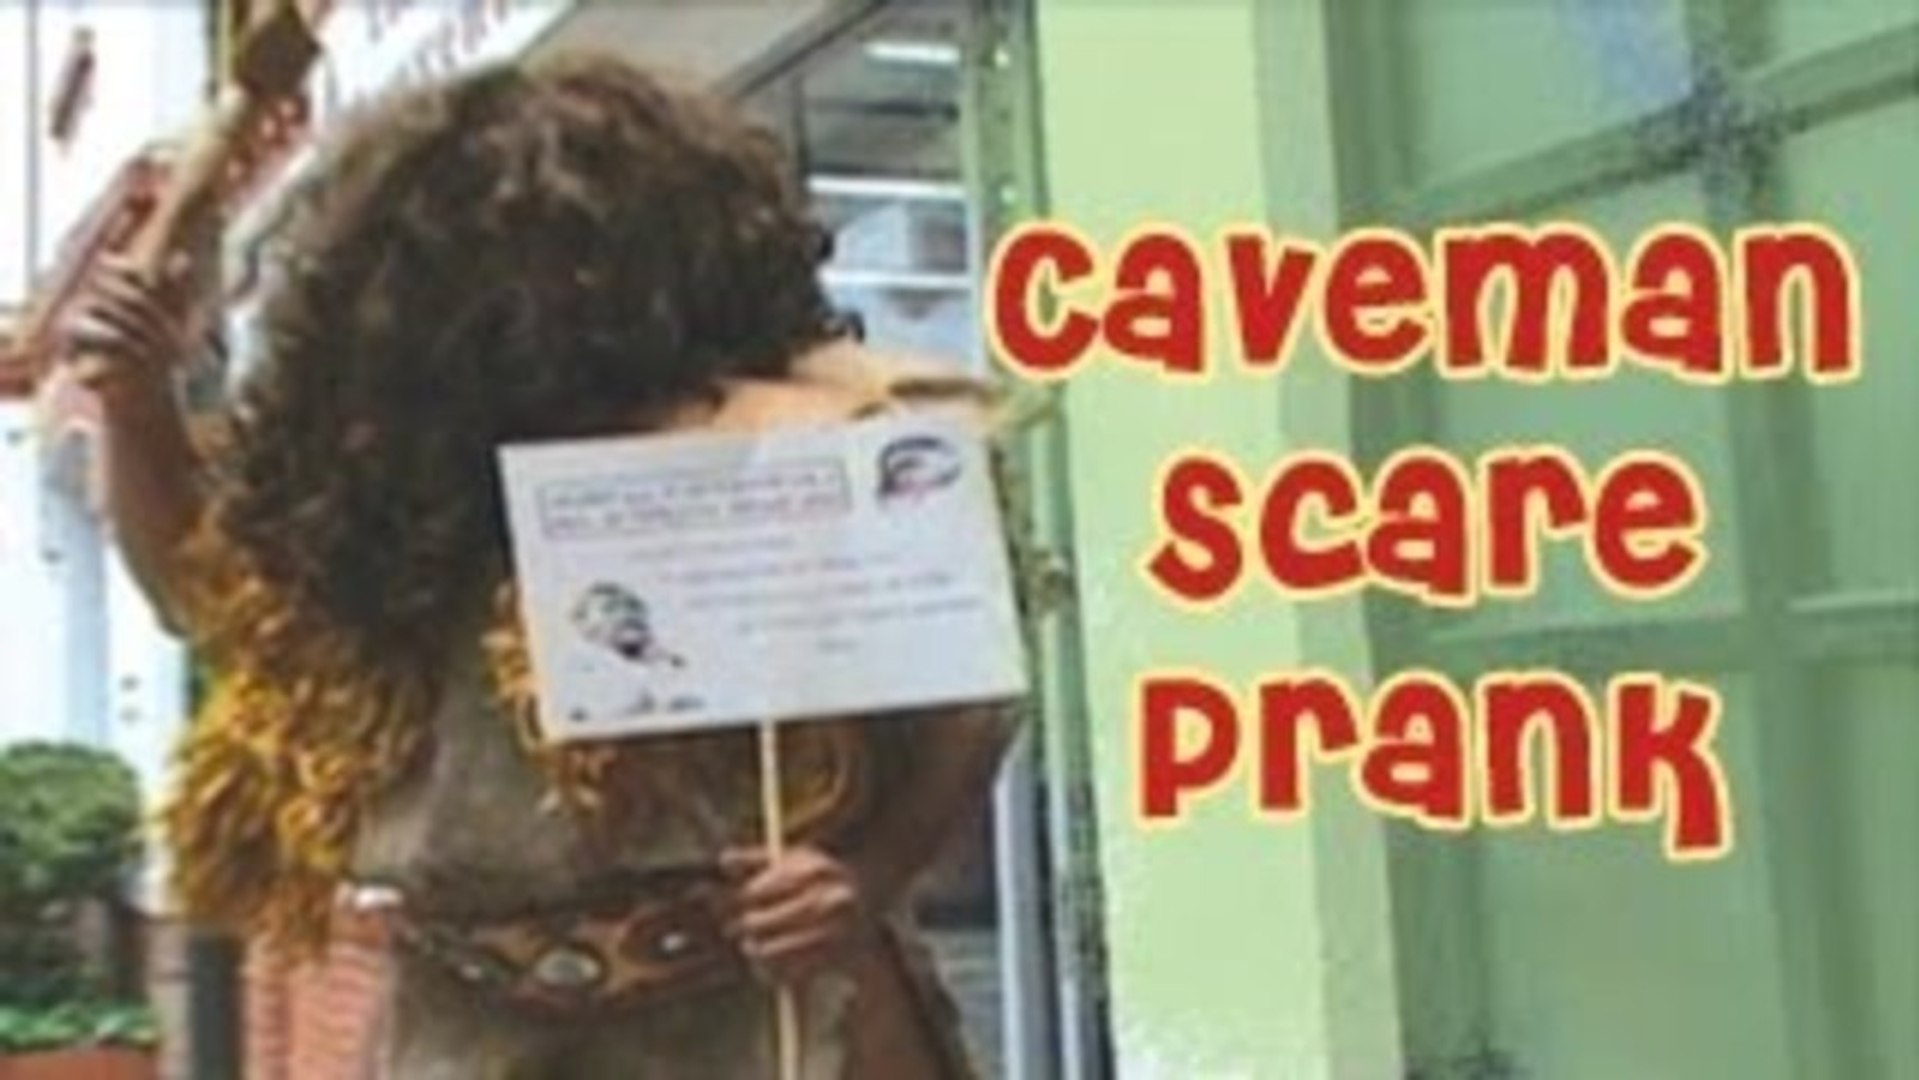 Prank - Caveman Scare Funny Prank _ Prank Attacks